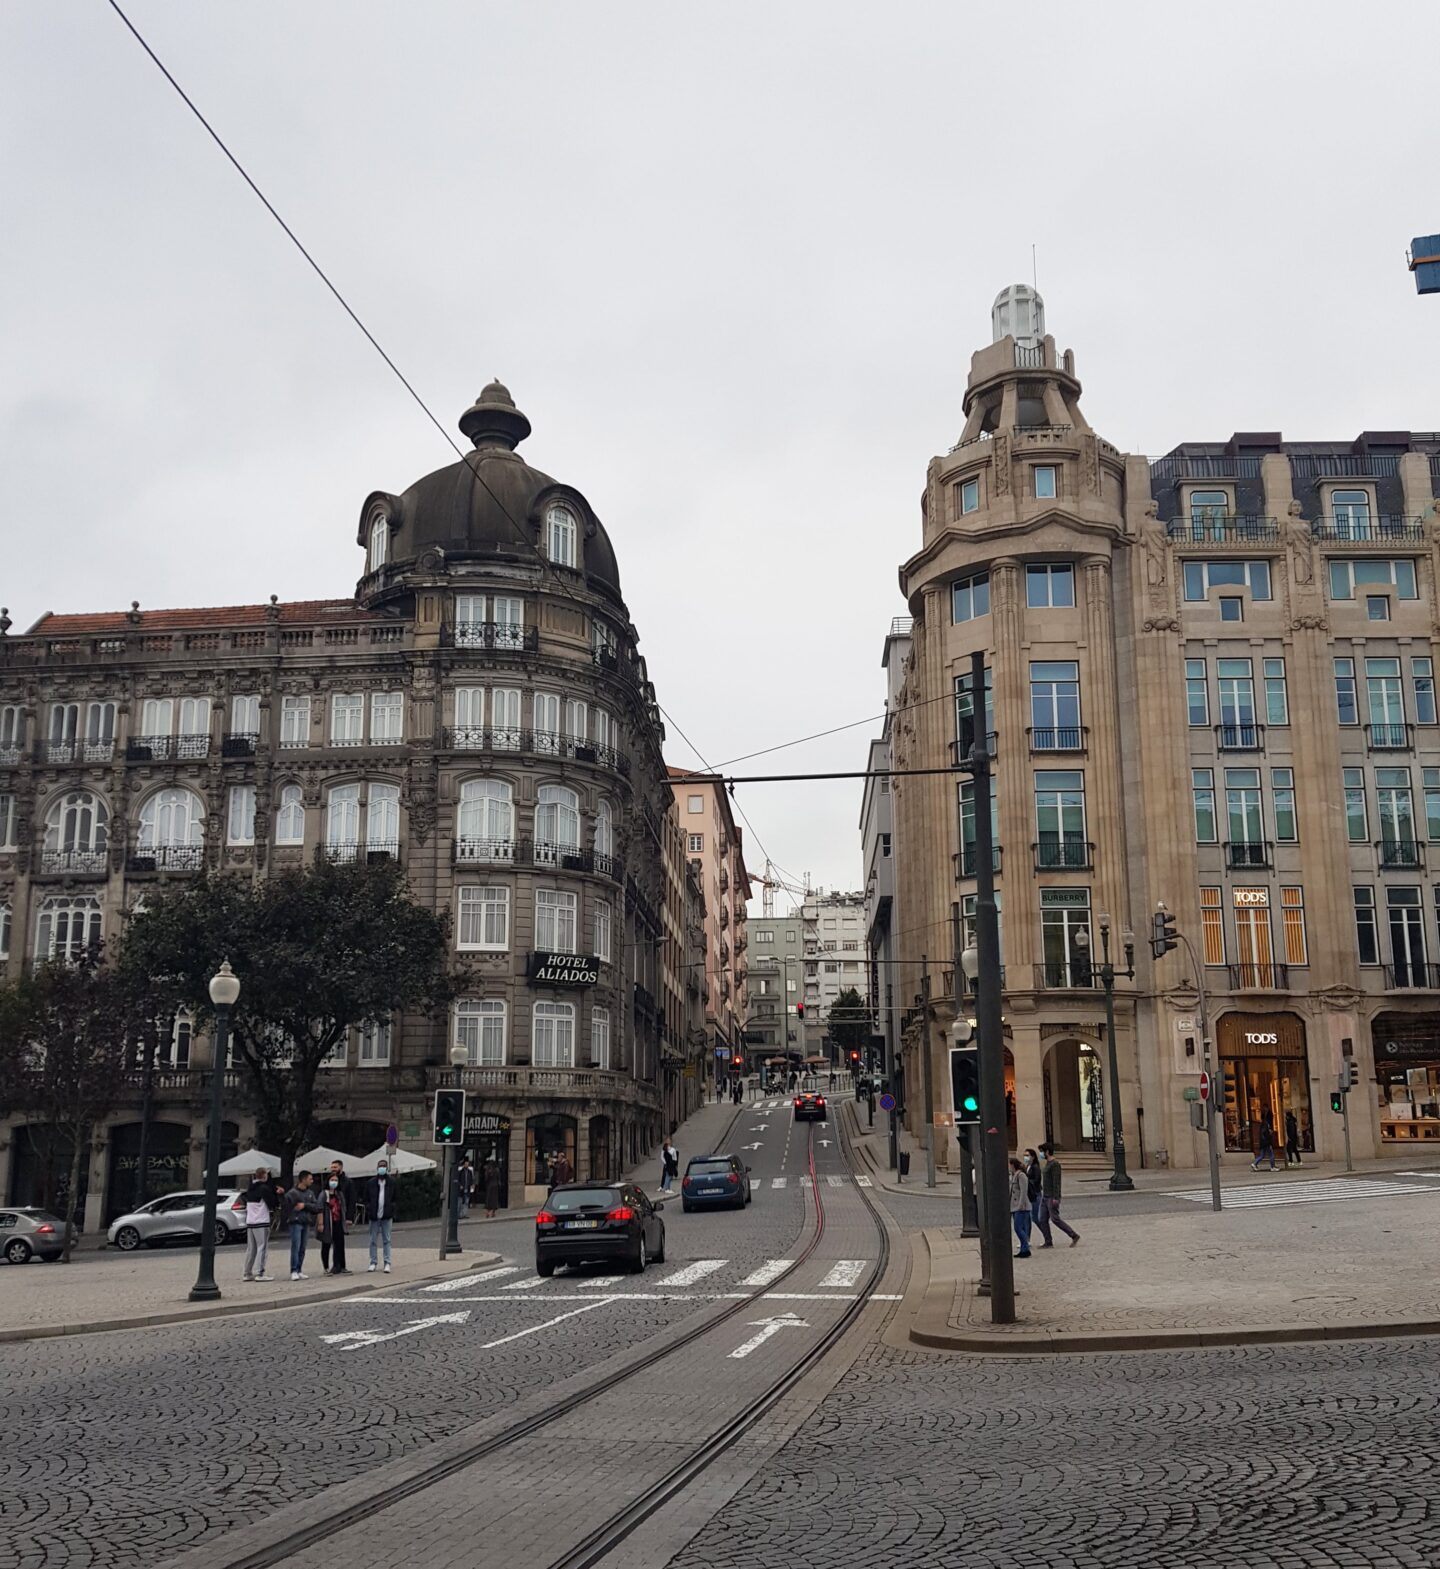 stedentrip naar Porto